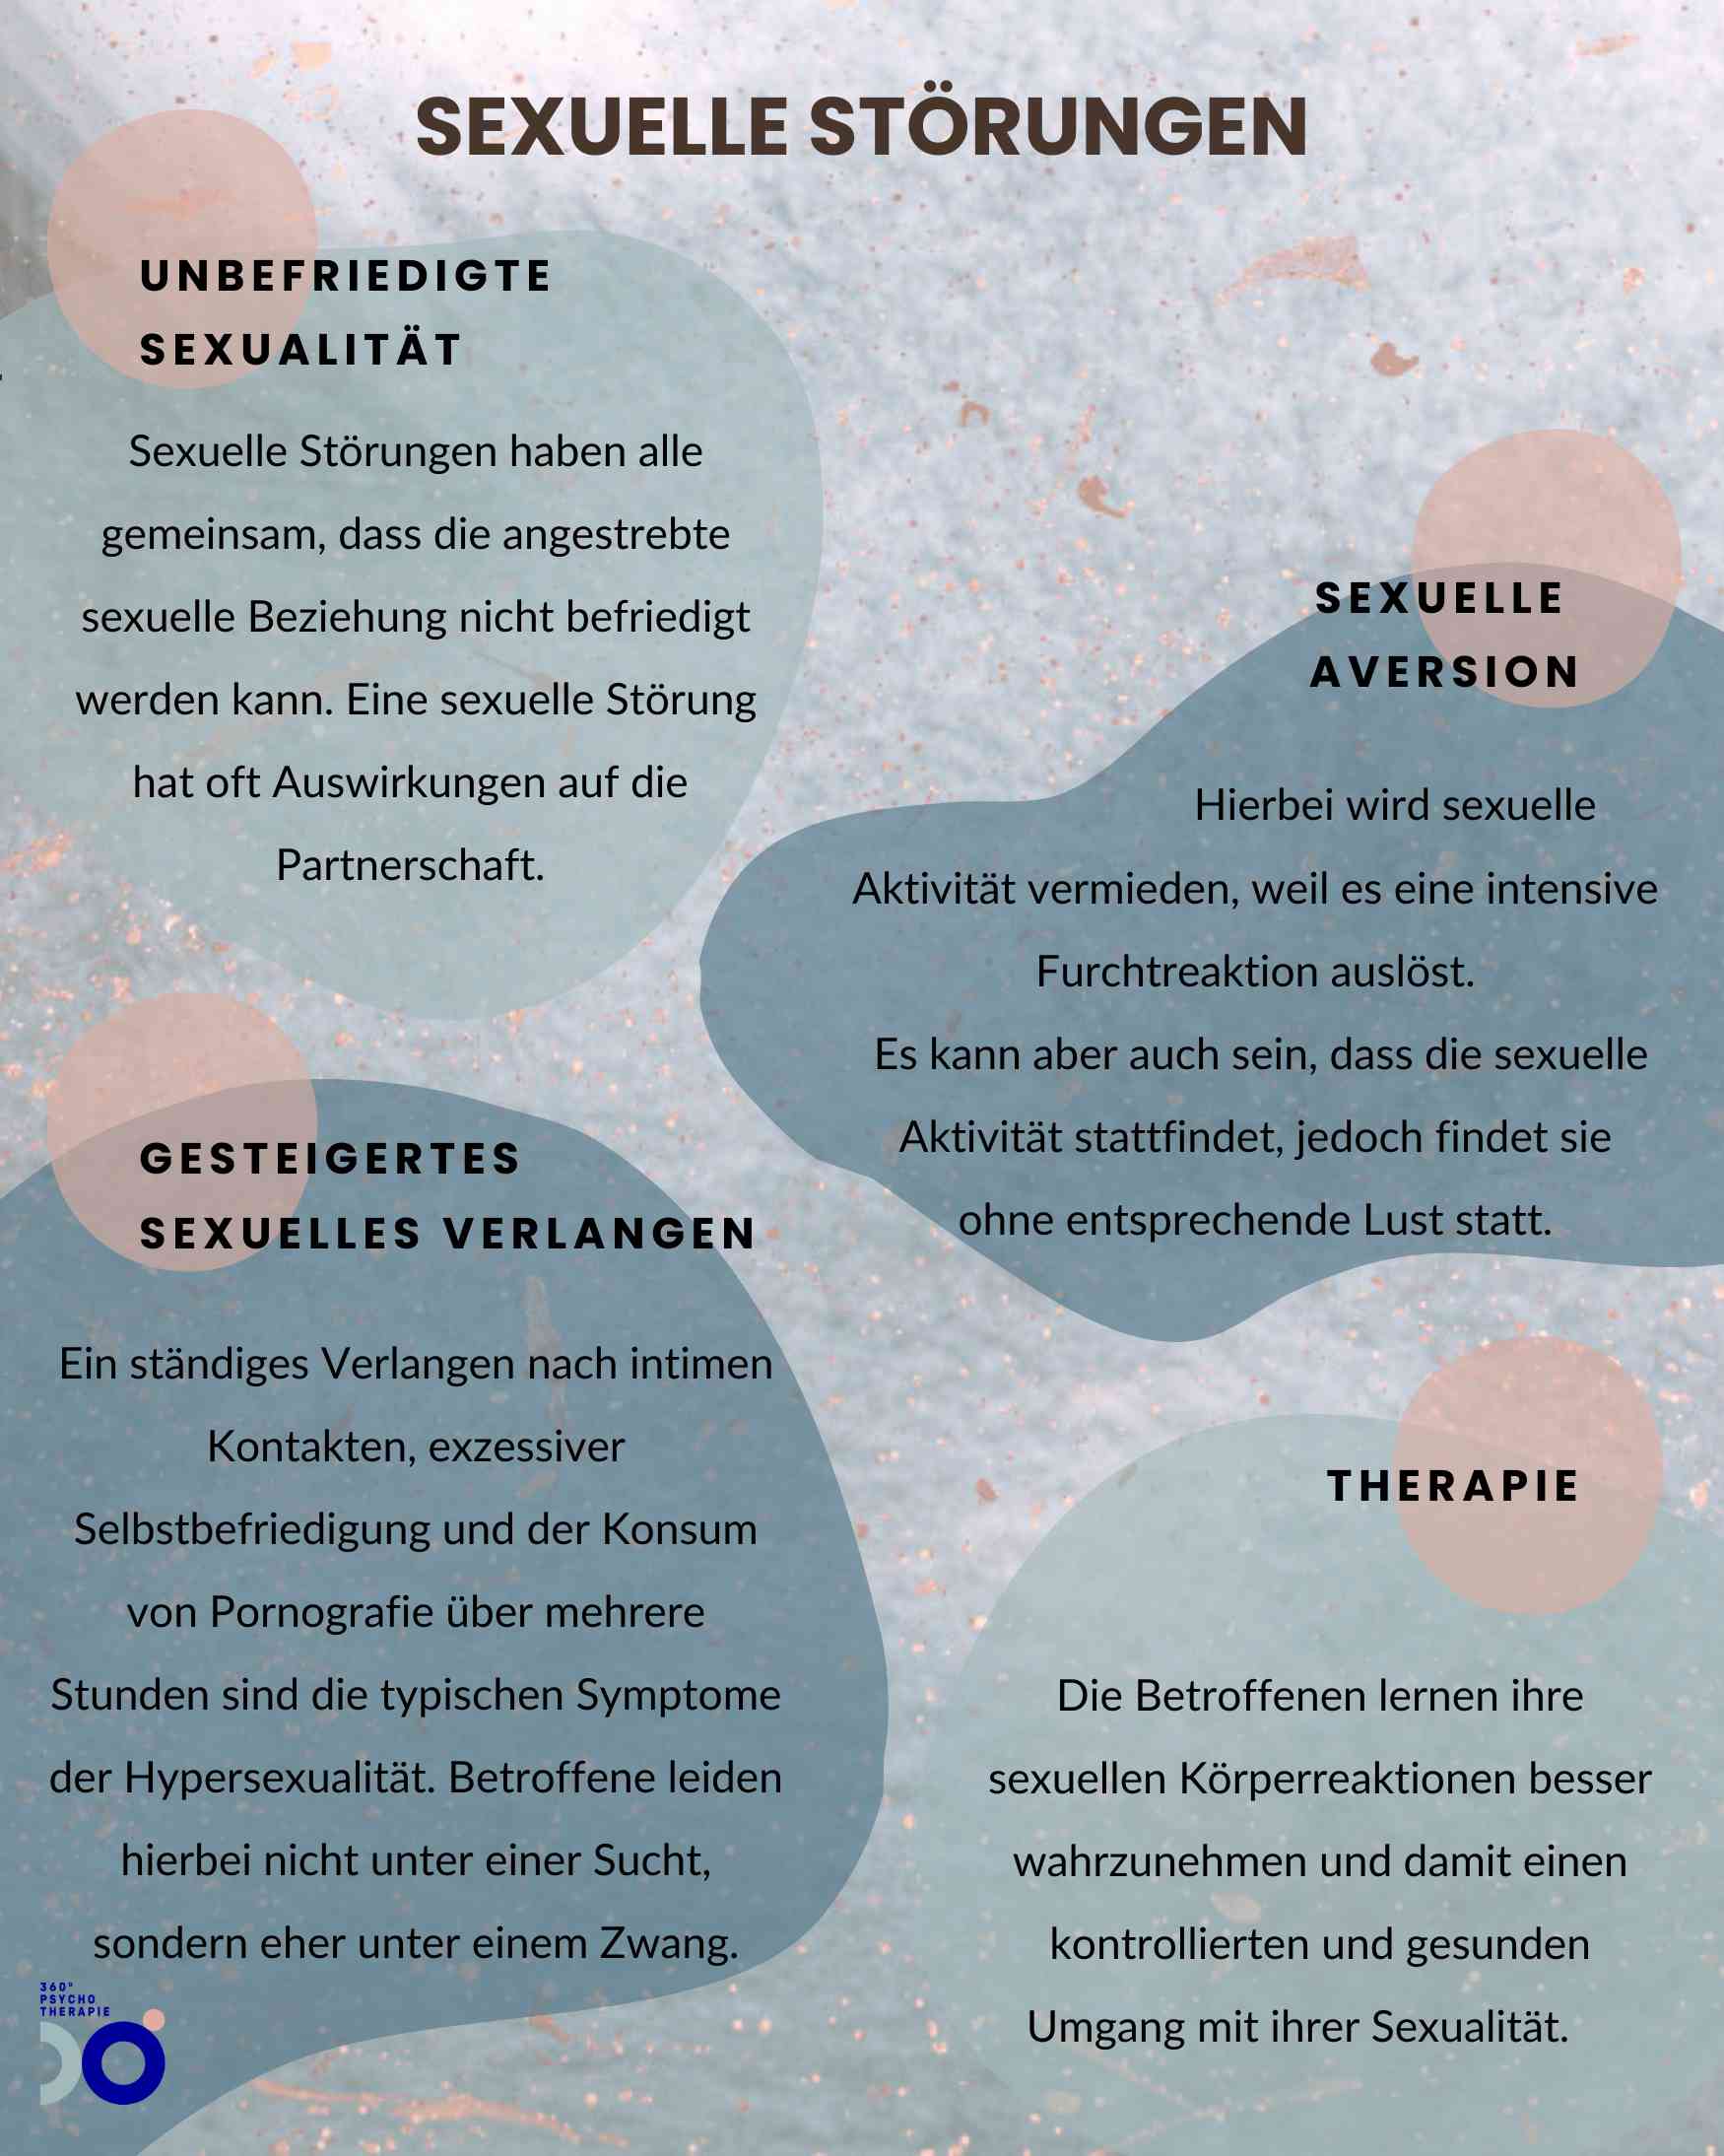 Infografik zum Thema sexuelle Störungen mit Symptomen und Behandlungsformen.